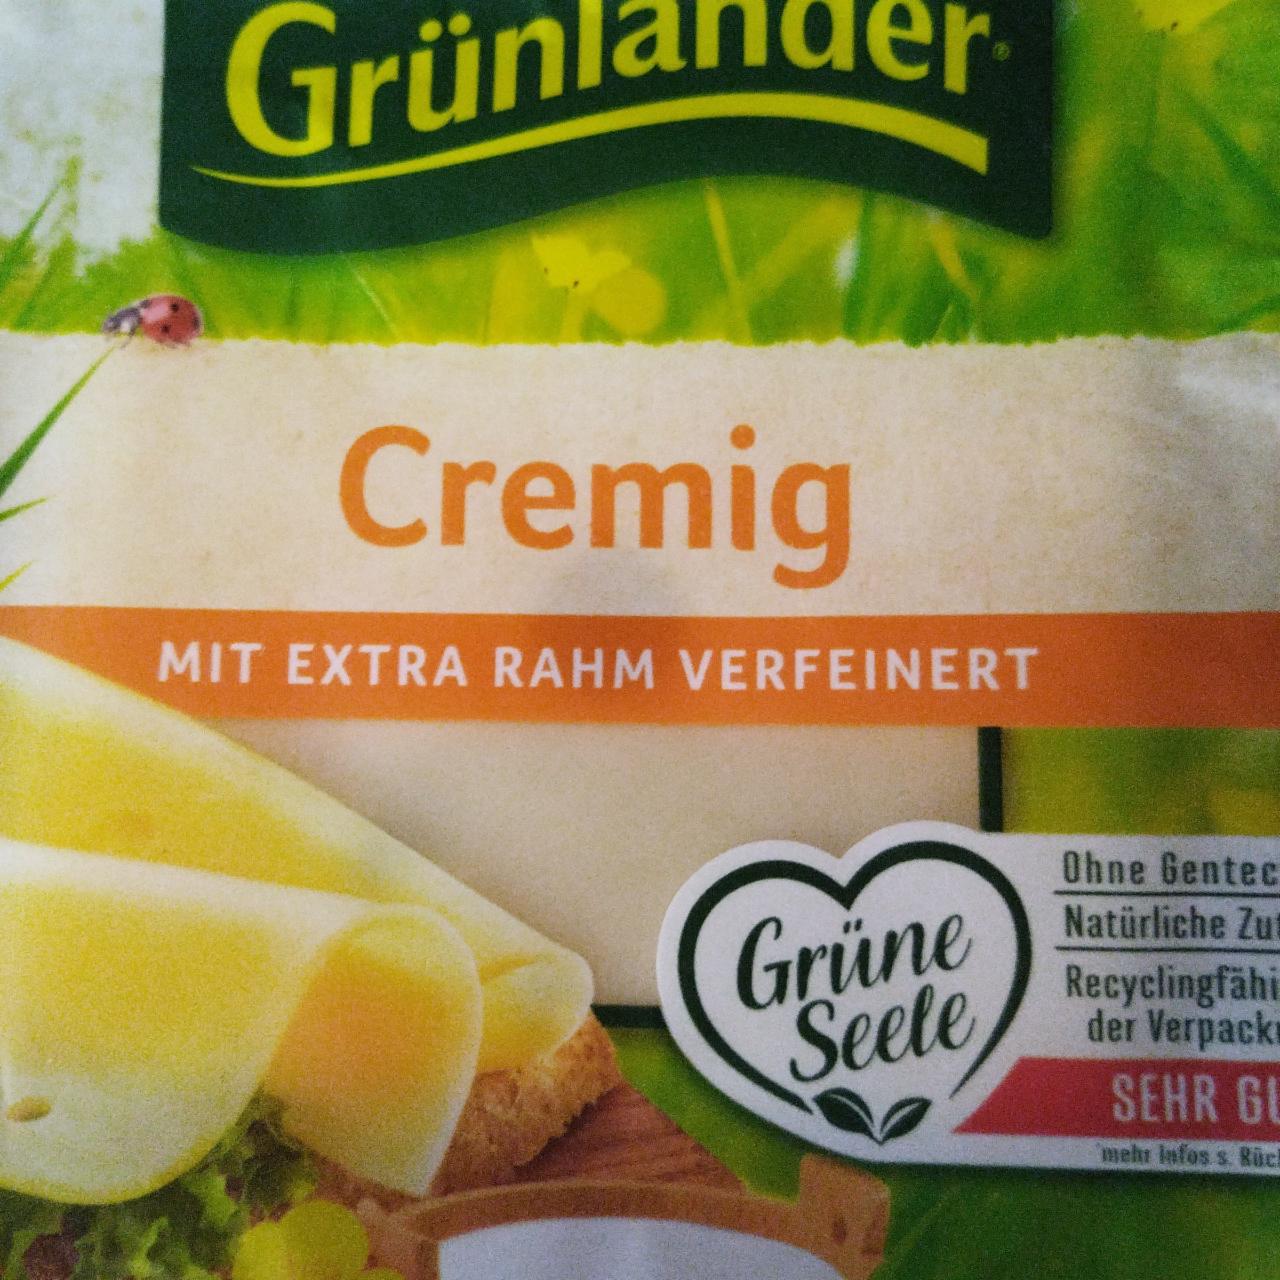 Фото - сыр твердый cremig Grünländer